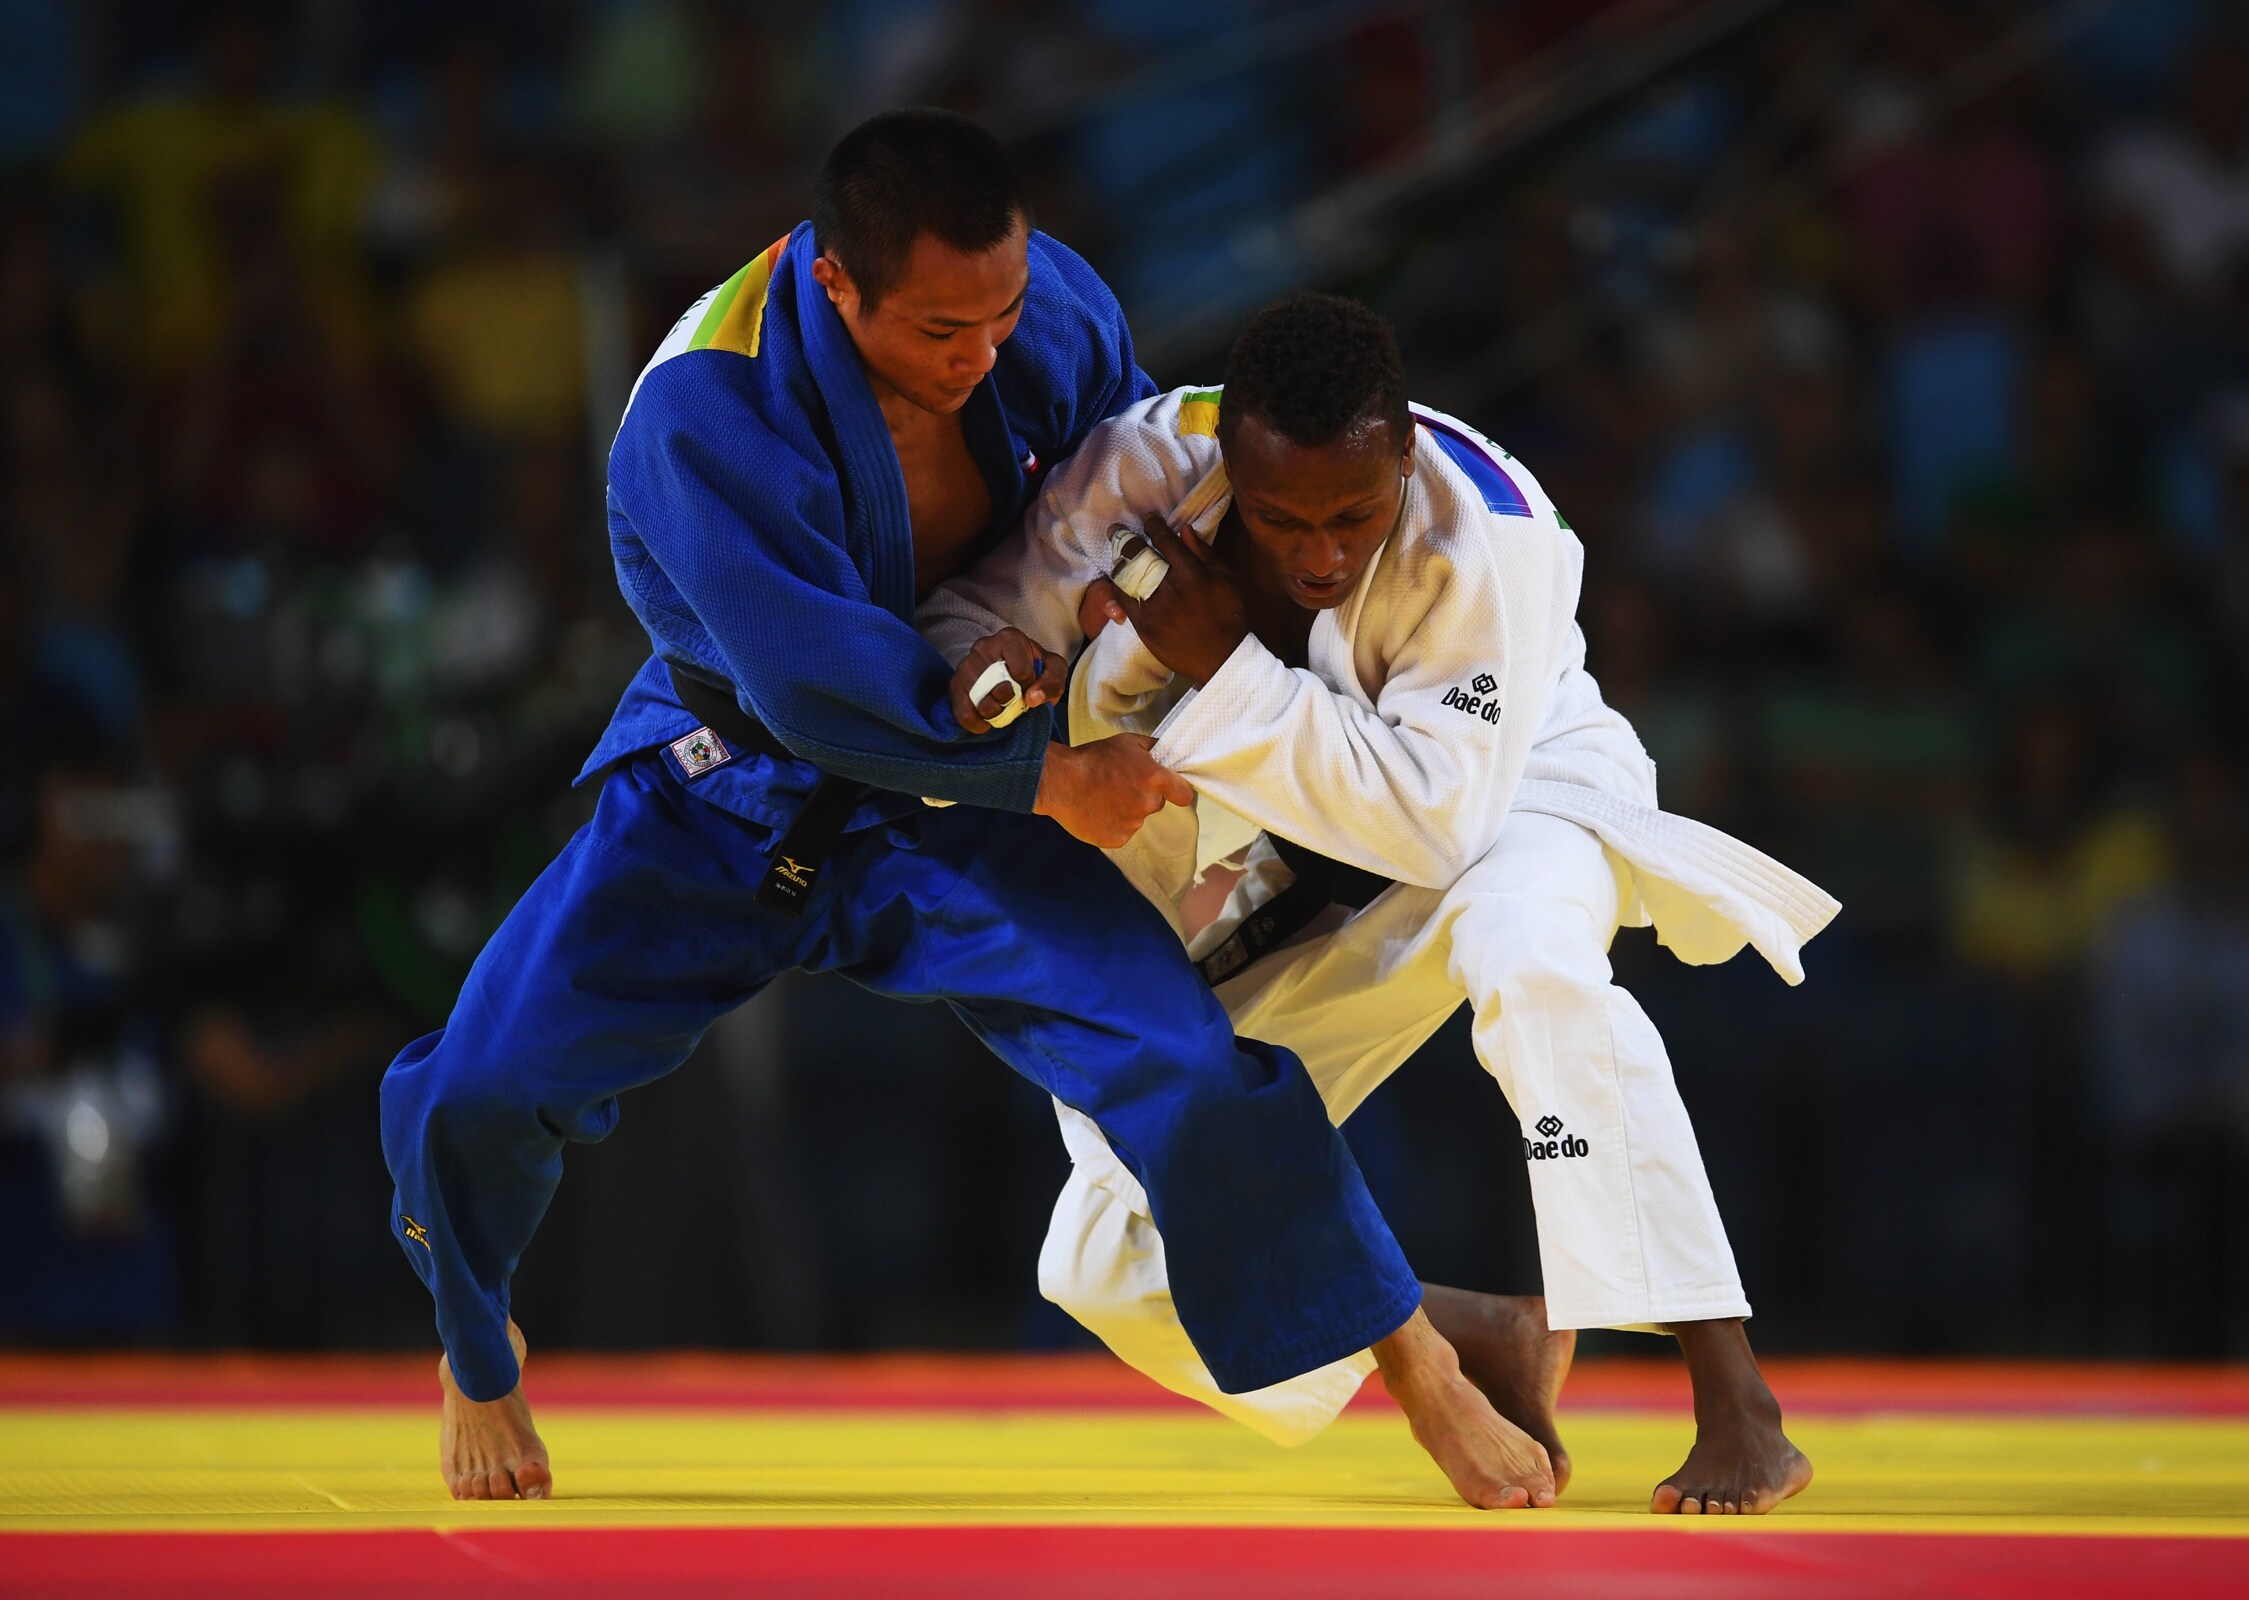 Judo 60 - 66kg (Half-lightweight) men